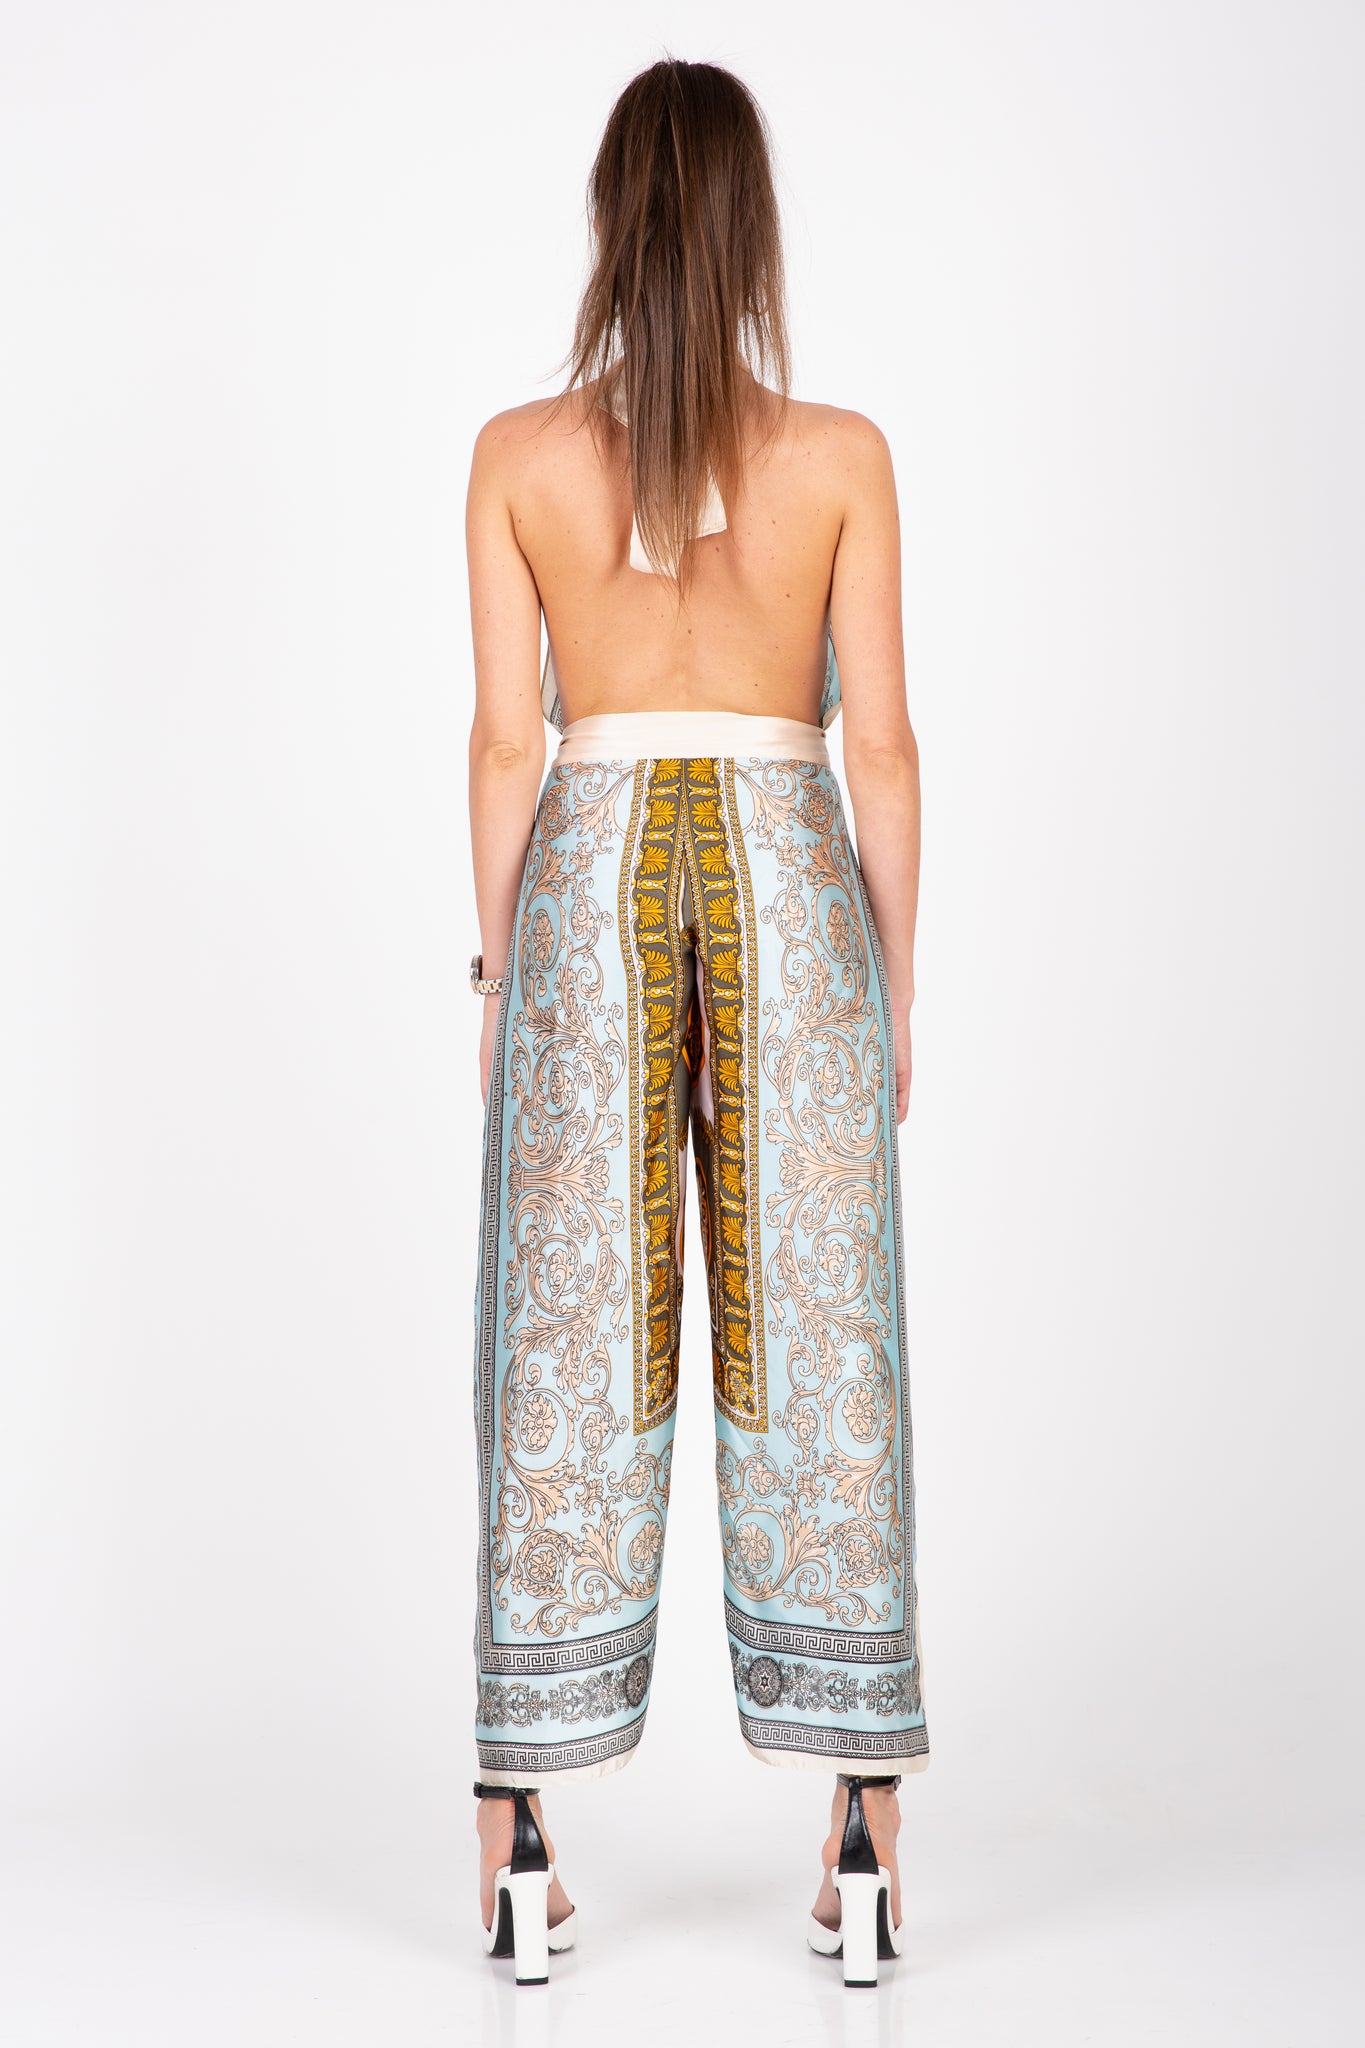 Pantalone/Tuta Dubai Barocco Celeste